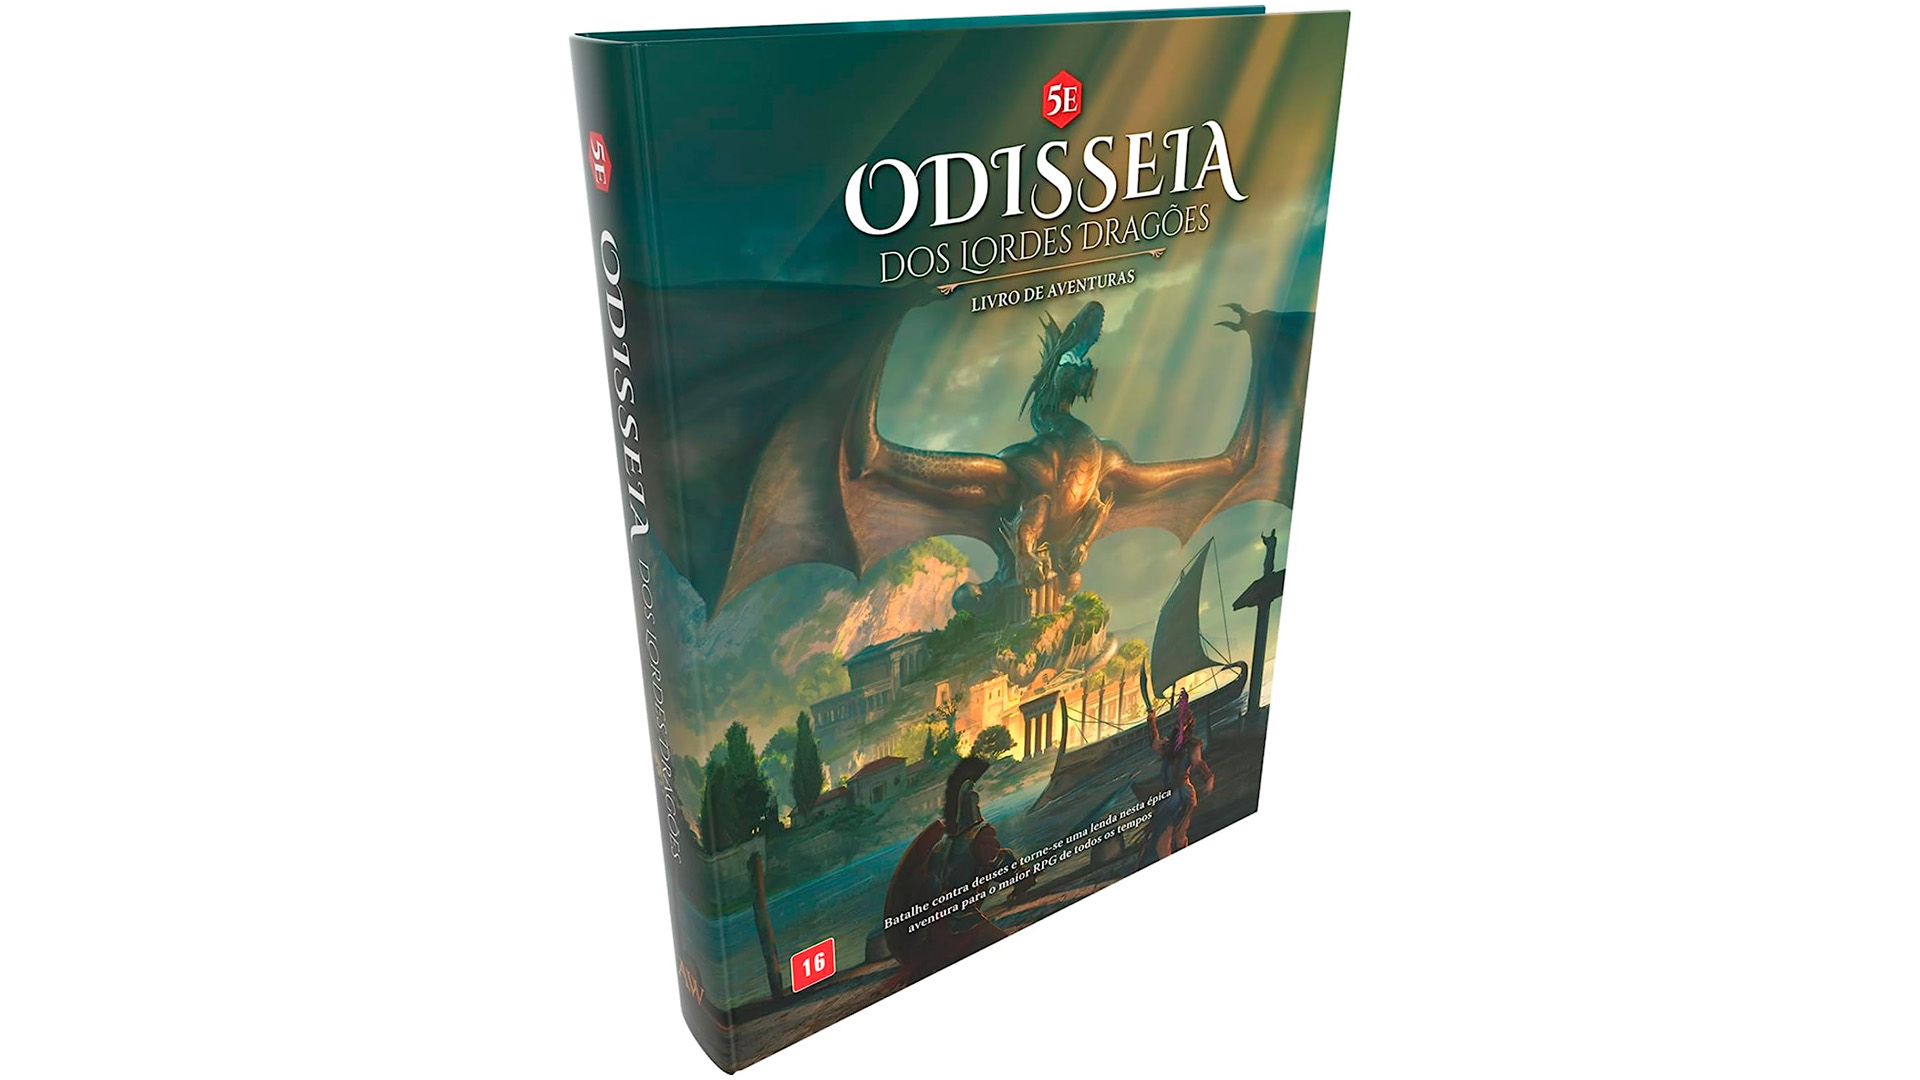 A Odisseia dos Lordes Dragões 5e: Livro de Aventuras – REVIEW